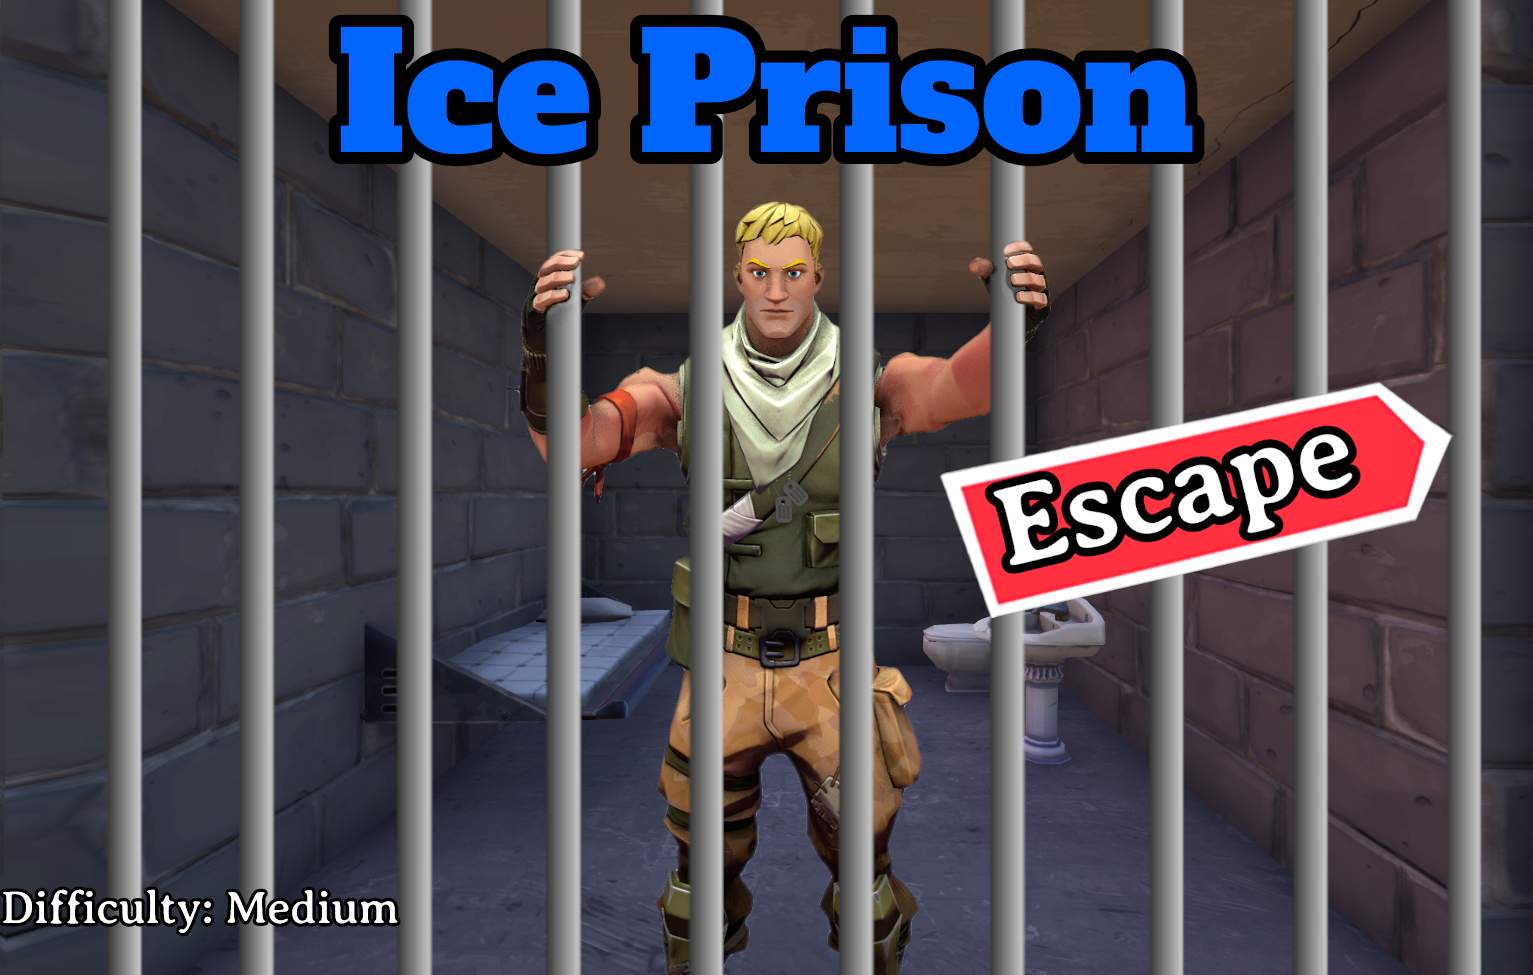 ICE PRISON ESCAPE